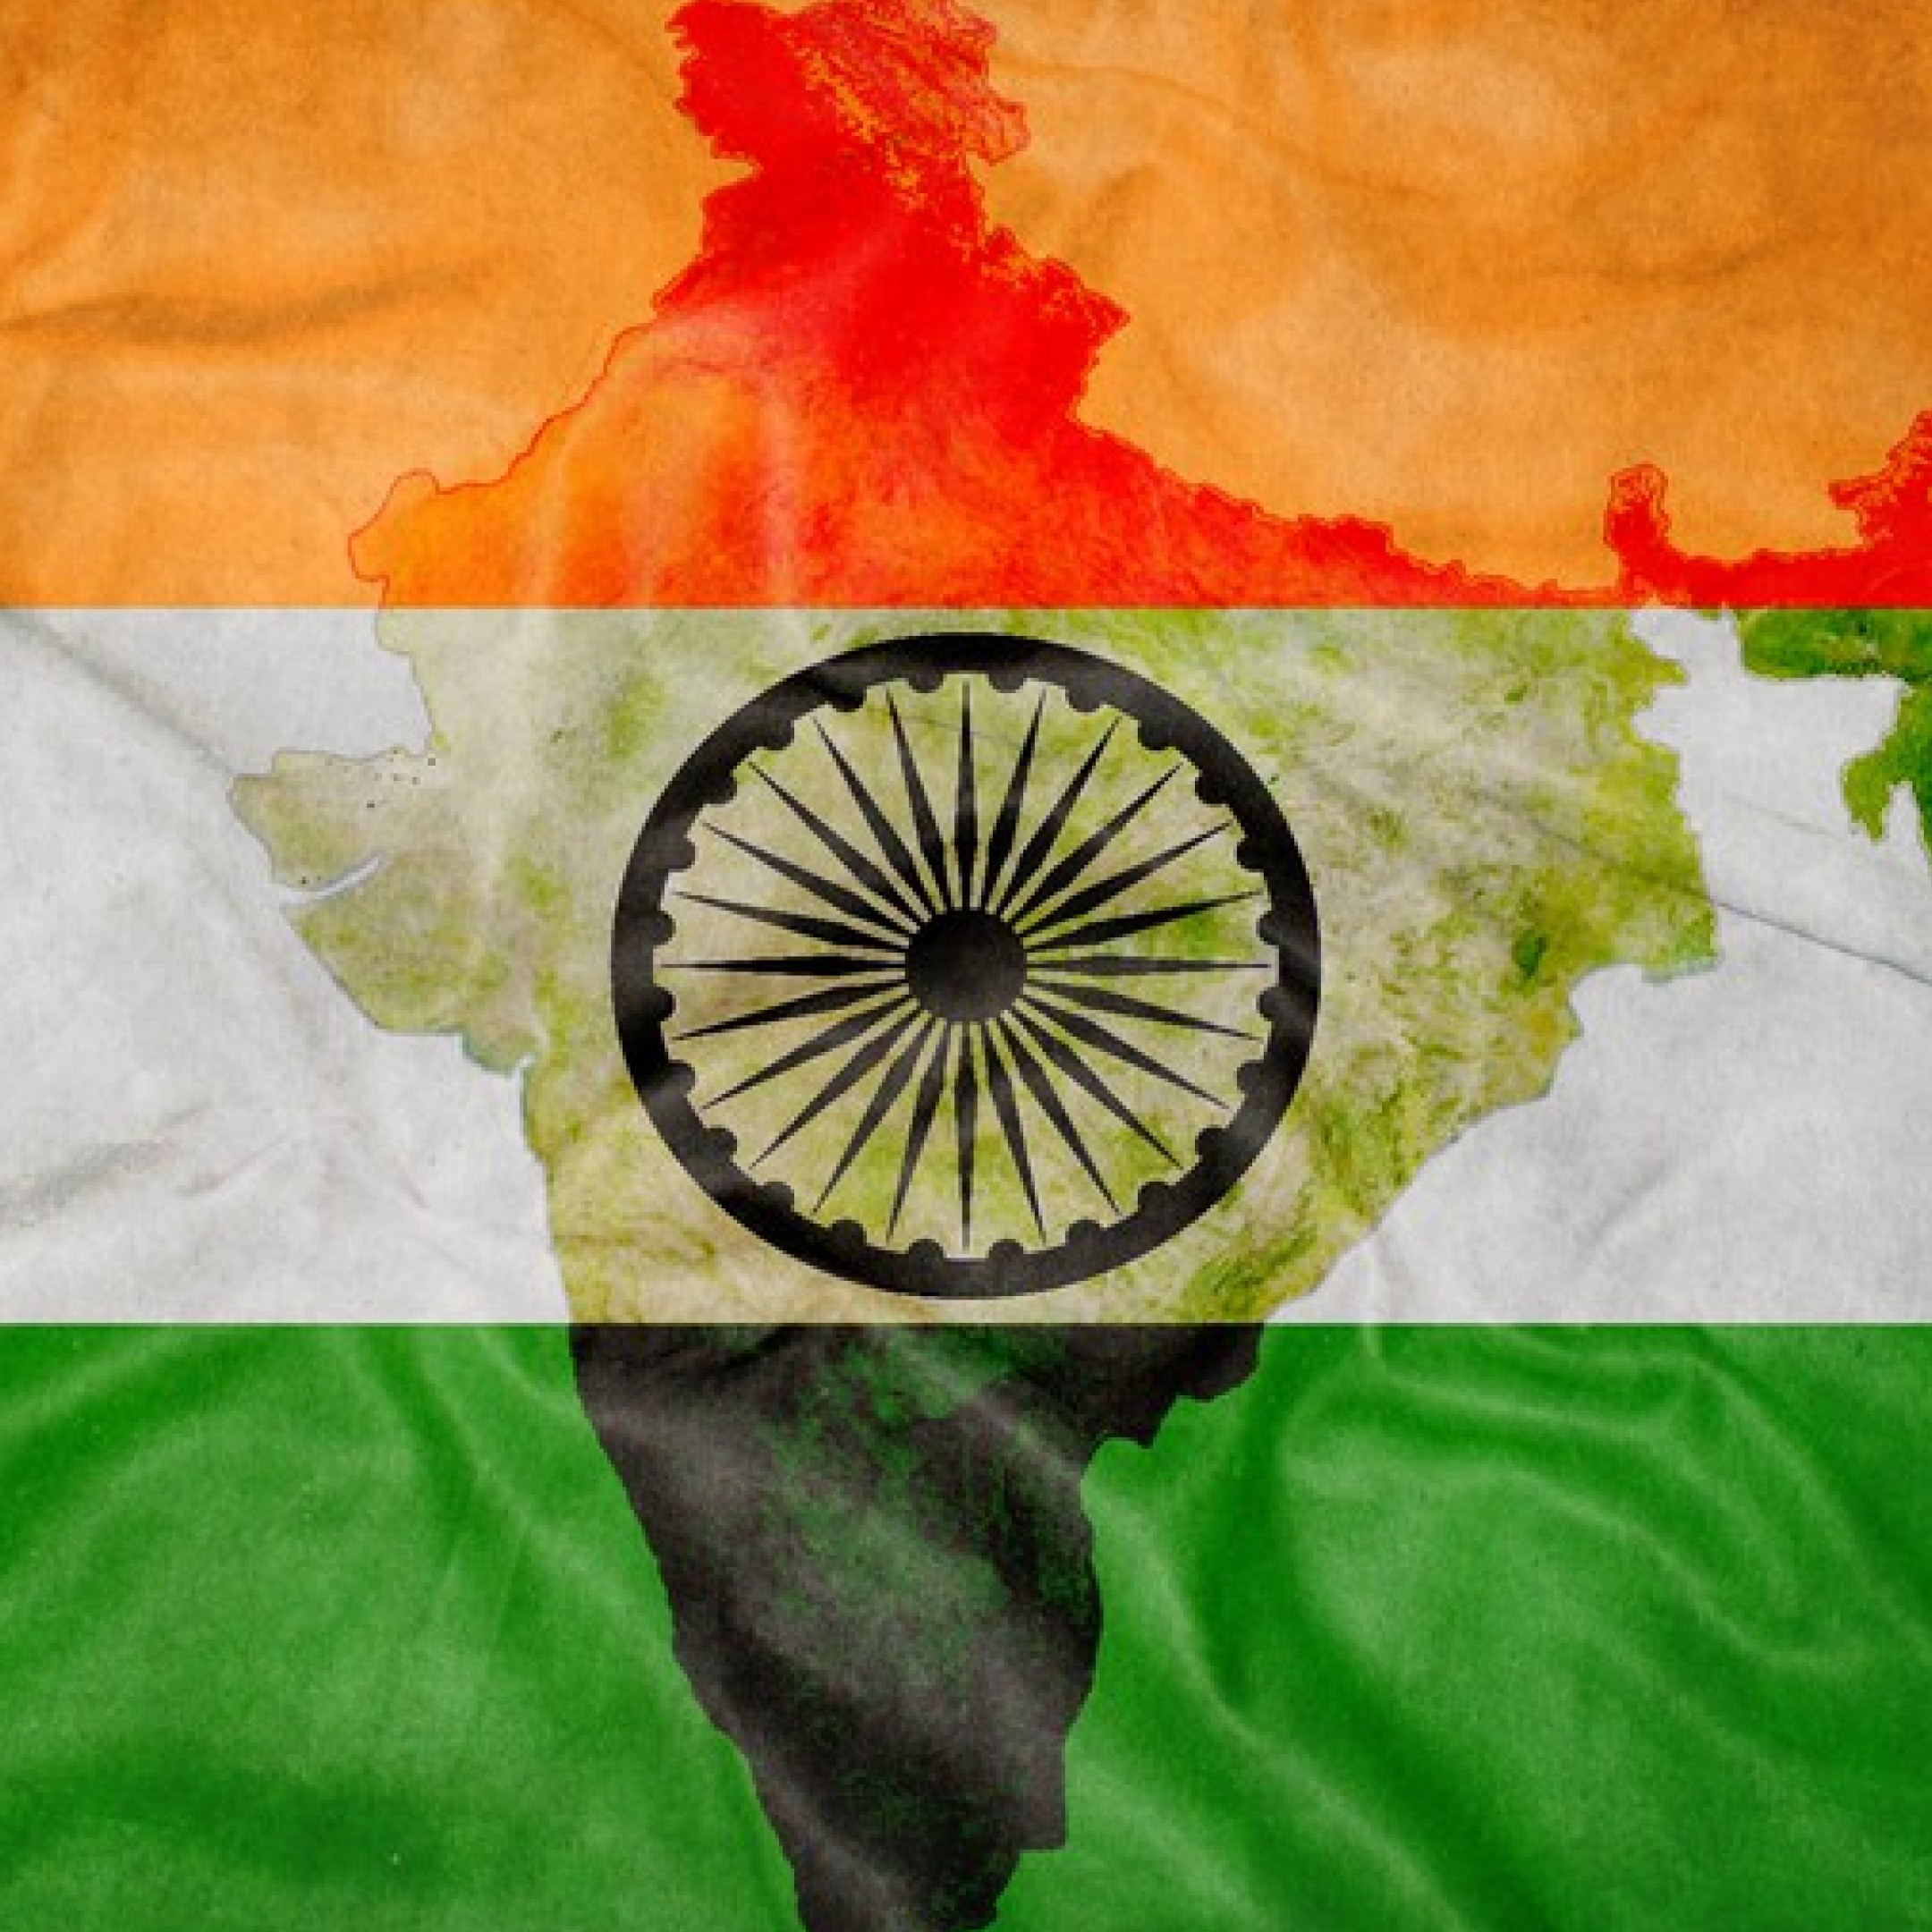 флаг индии картинки в хорошем качестве